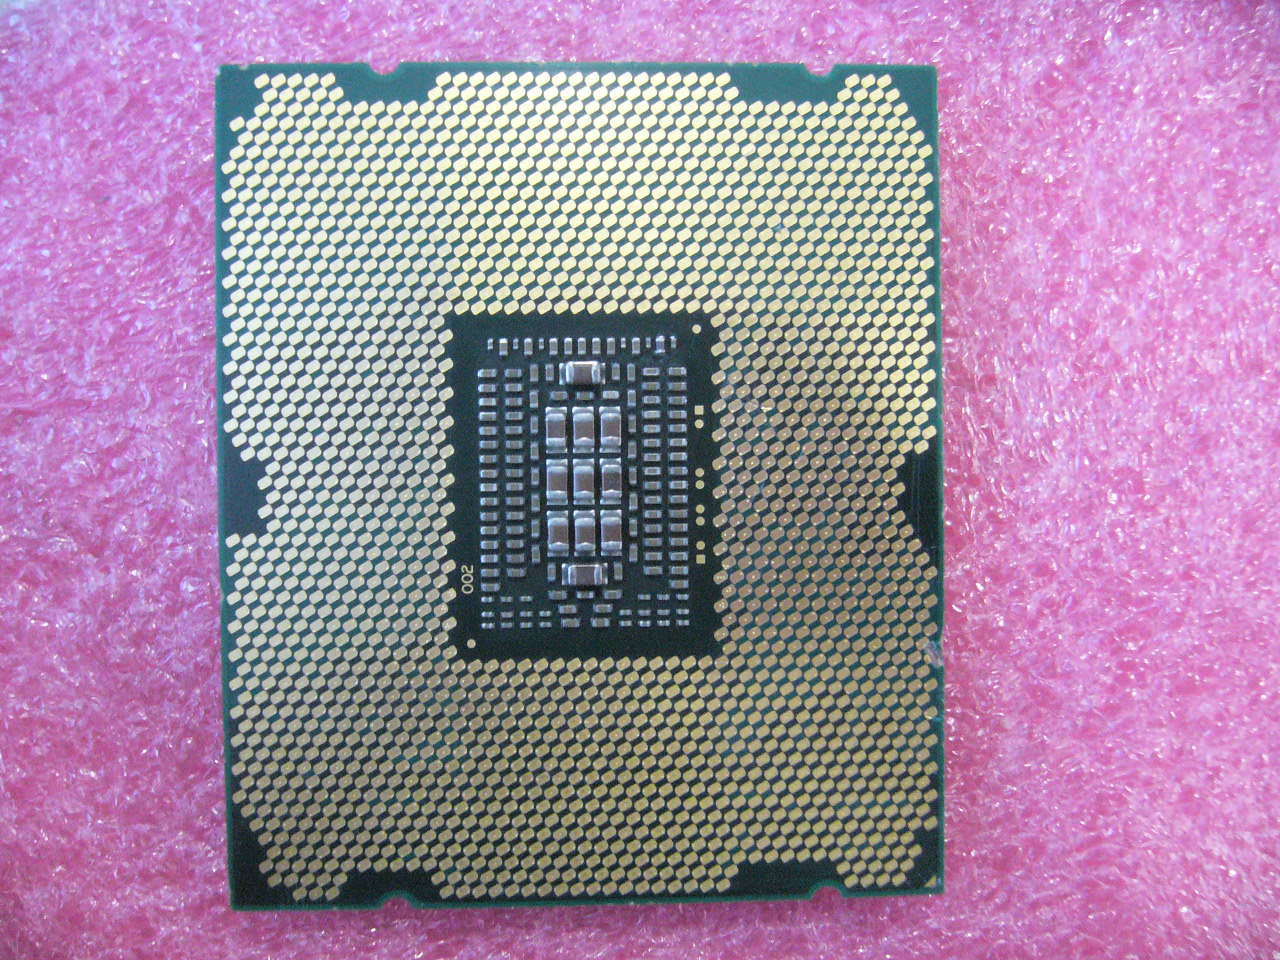 QTY 1x Intel CPU E5-2620 CPU 6-Cores 2.0Ghz LGA2011 SR0KW Mem Channel damaged - zum Schließen ins Bild klicken